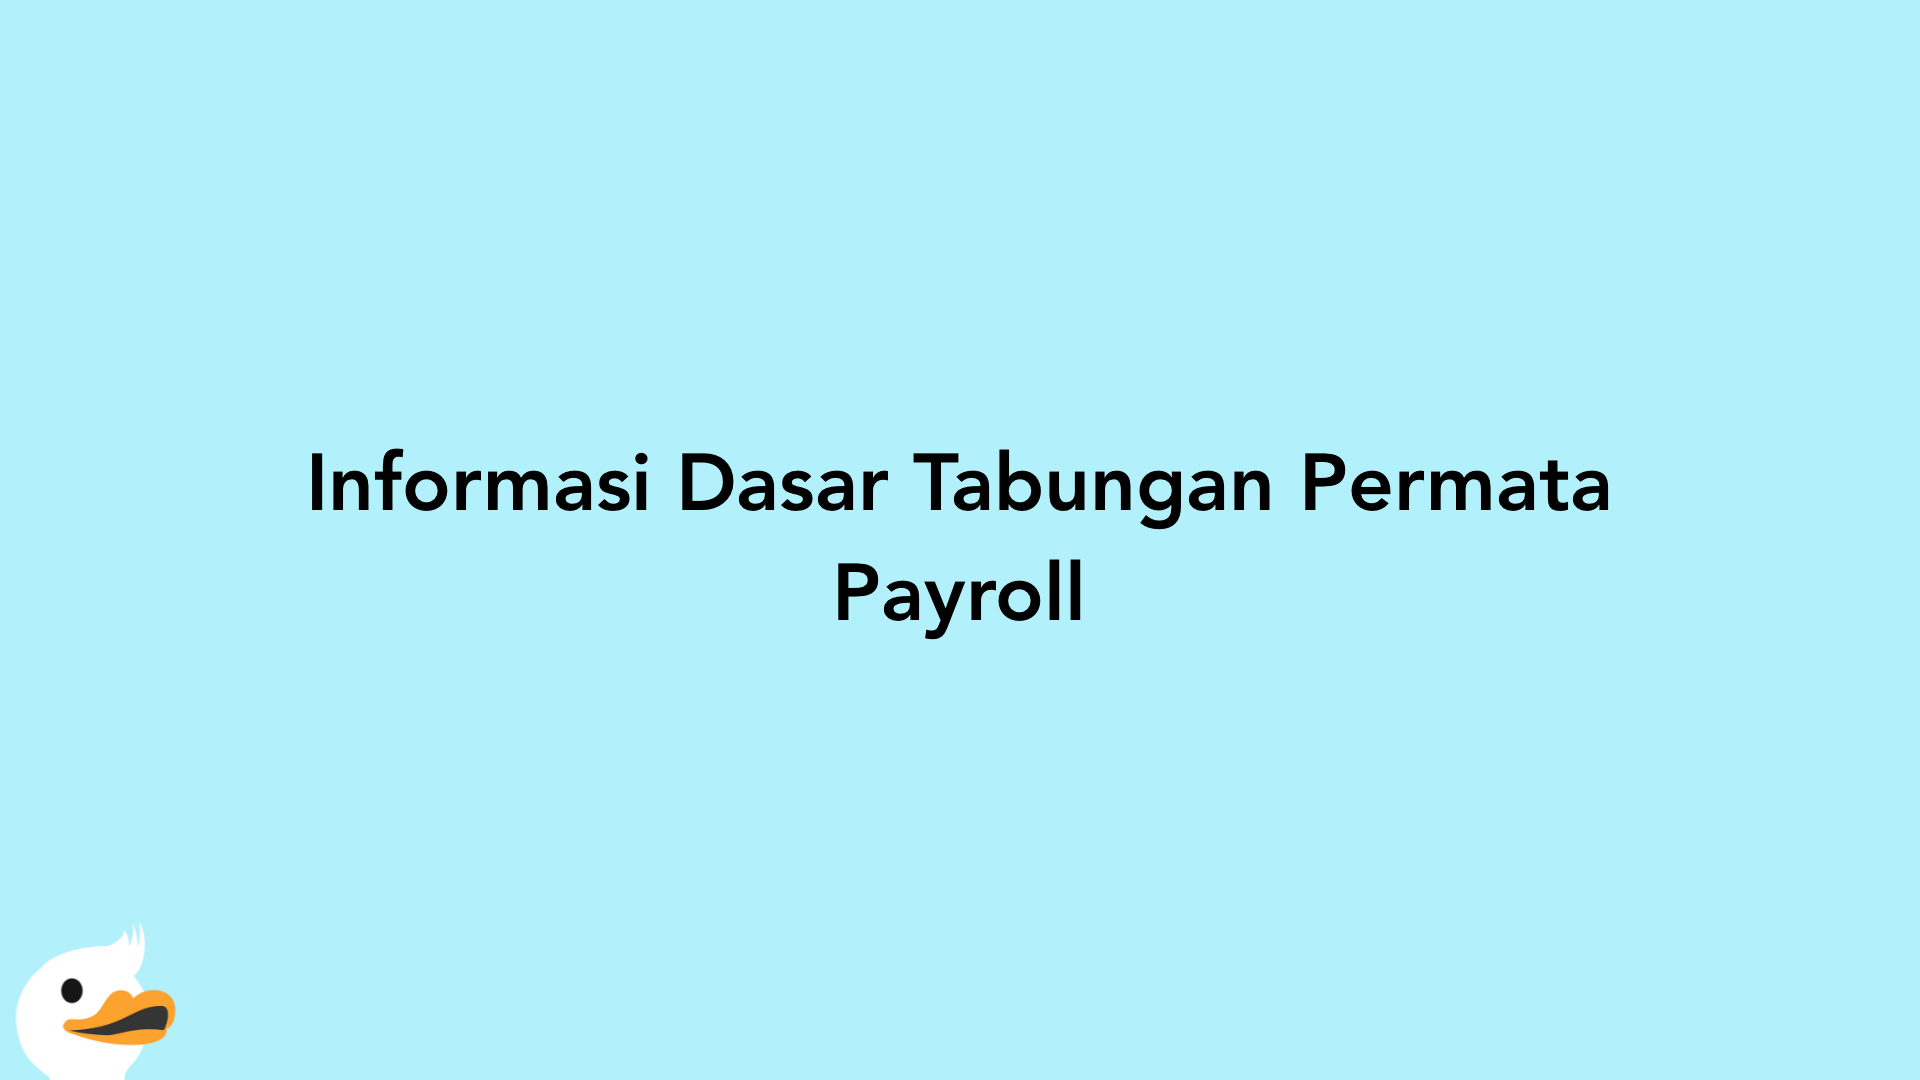 Informasi Dasar Tabungan Permata Payroll